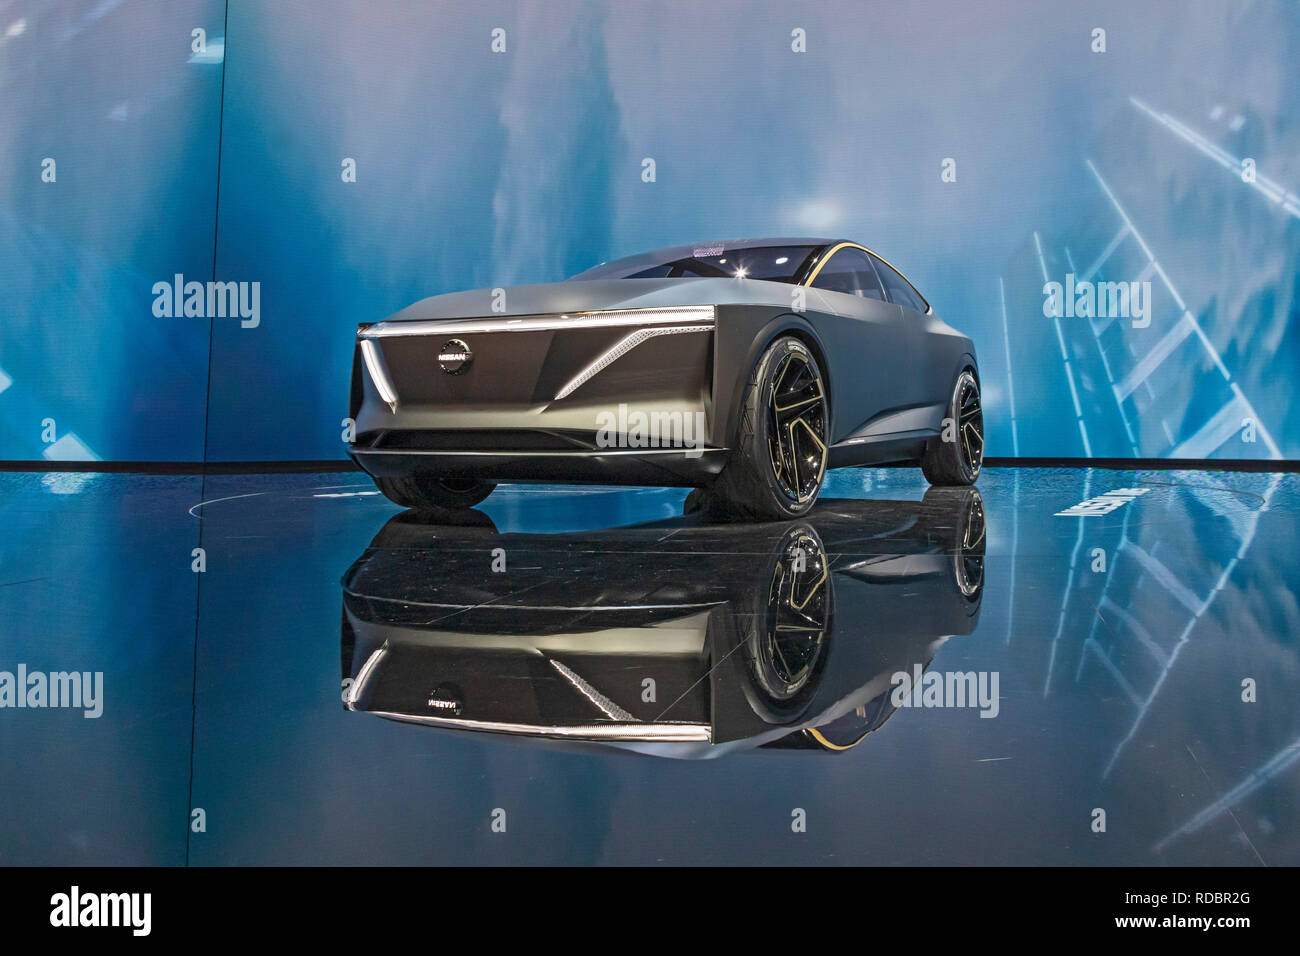 Detroit, Michigan - der Nissan IMS Elektrofahrzeug Concept Car auf der North American International Auto Show. Stockfoto